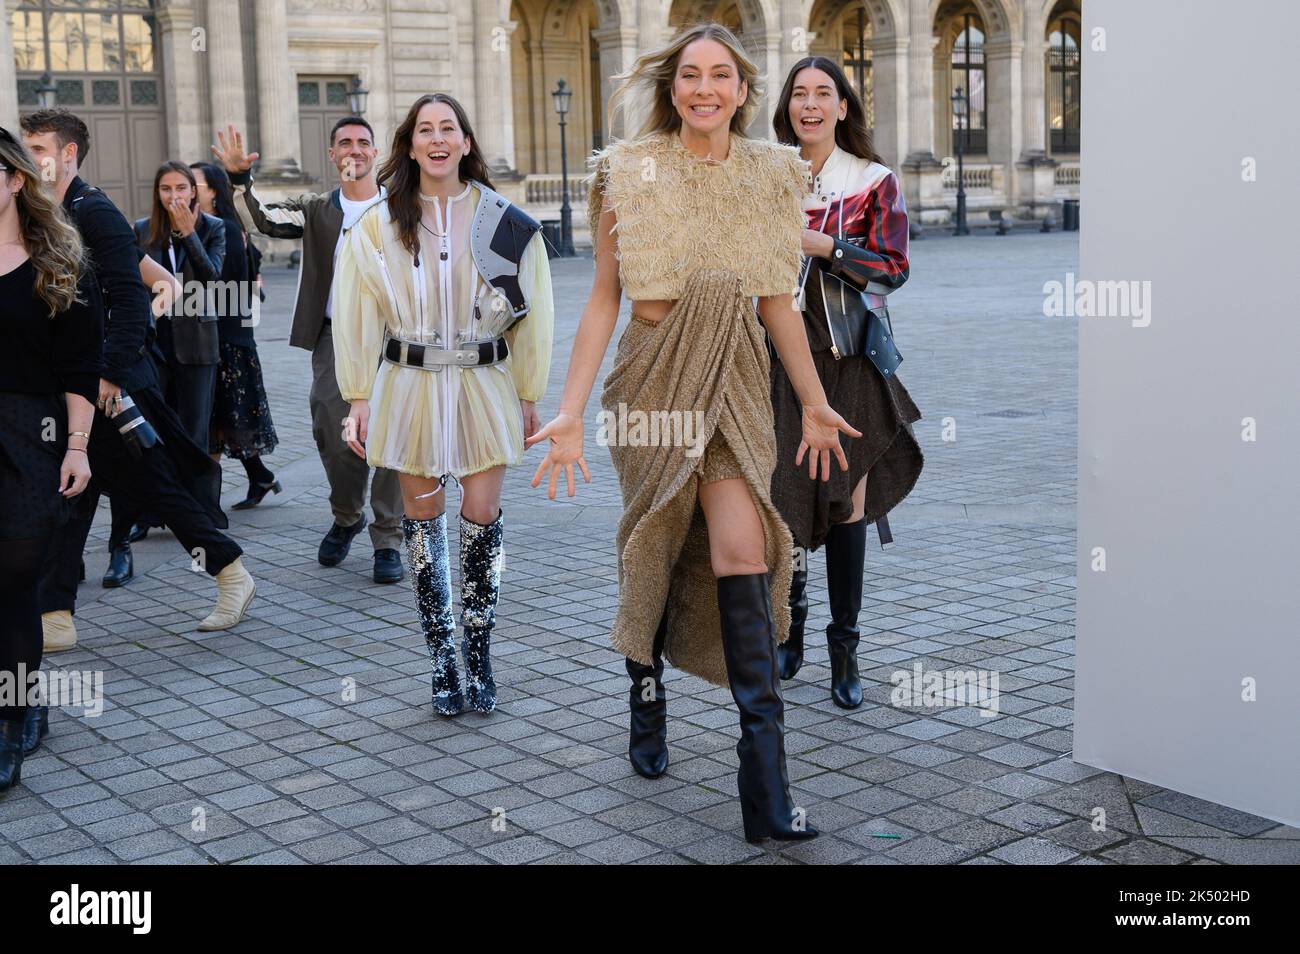 Este Haim and Alana Haim attending the Louis Vuitton Womenswear